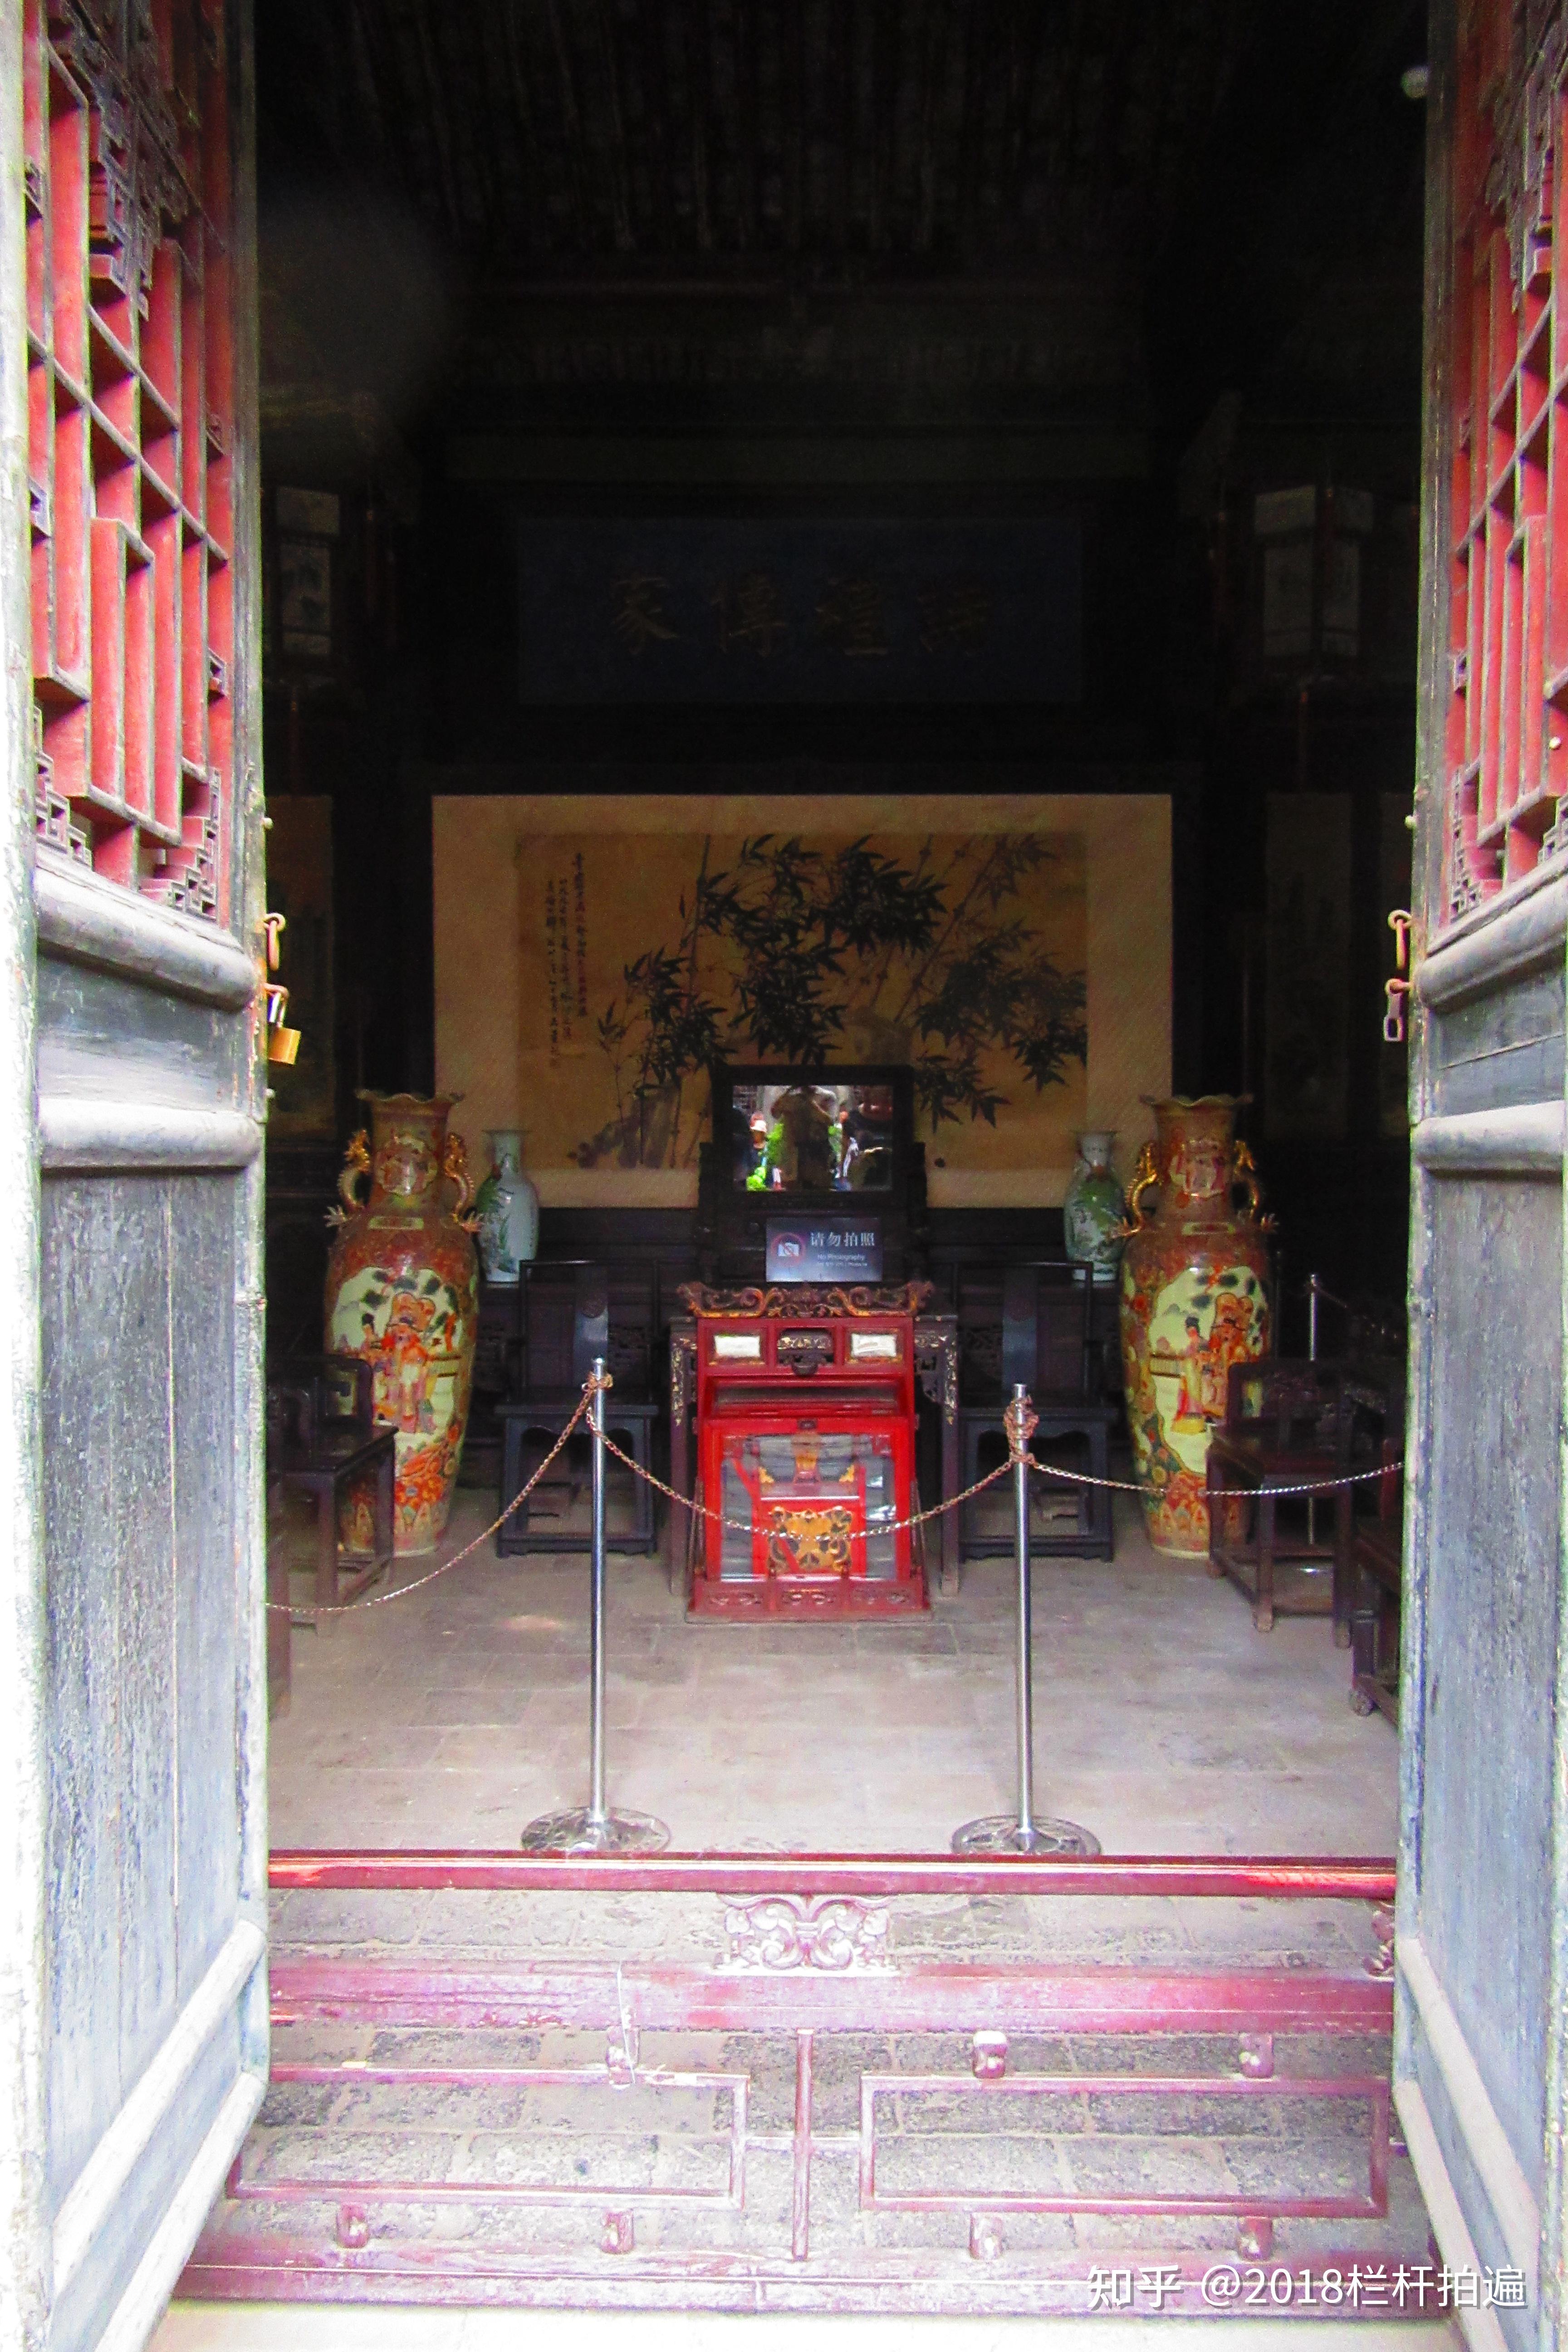 走进山西灵石王家大院,感受中国历史文化,还可以感受A级旅游景区